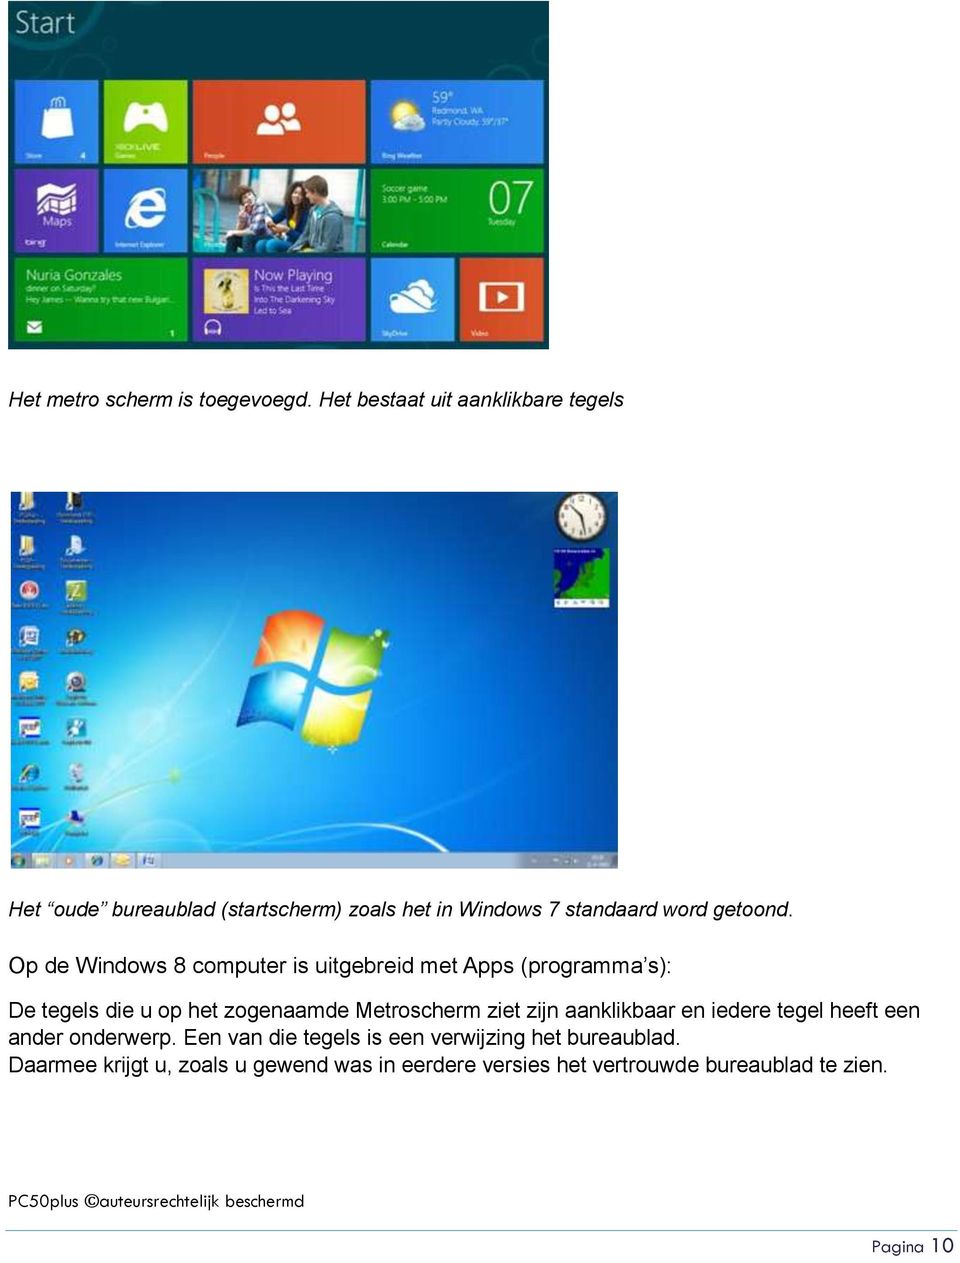 Op de Windows 8 computer is uitgebreid met Apps (programma s): De tegels die u op het zogenaamde Metroscherm ziet zijn